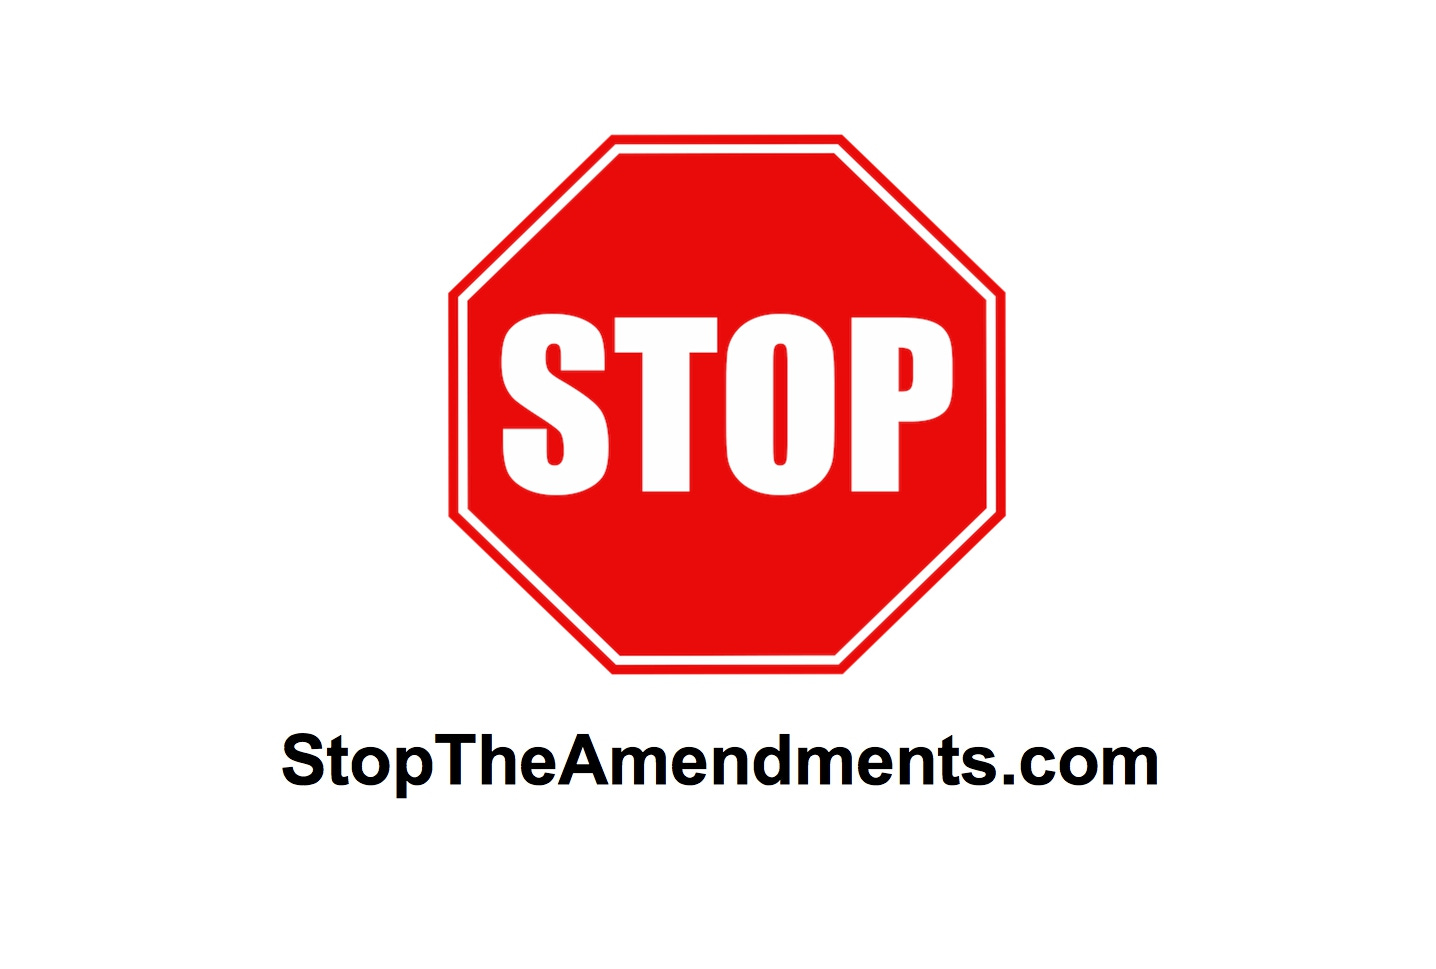 STOP THE AMENDMENTS